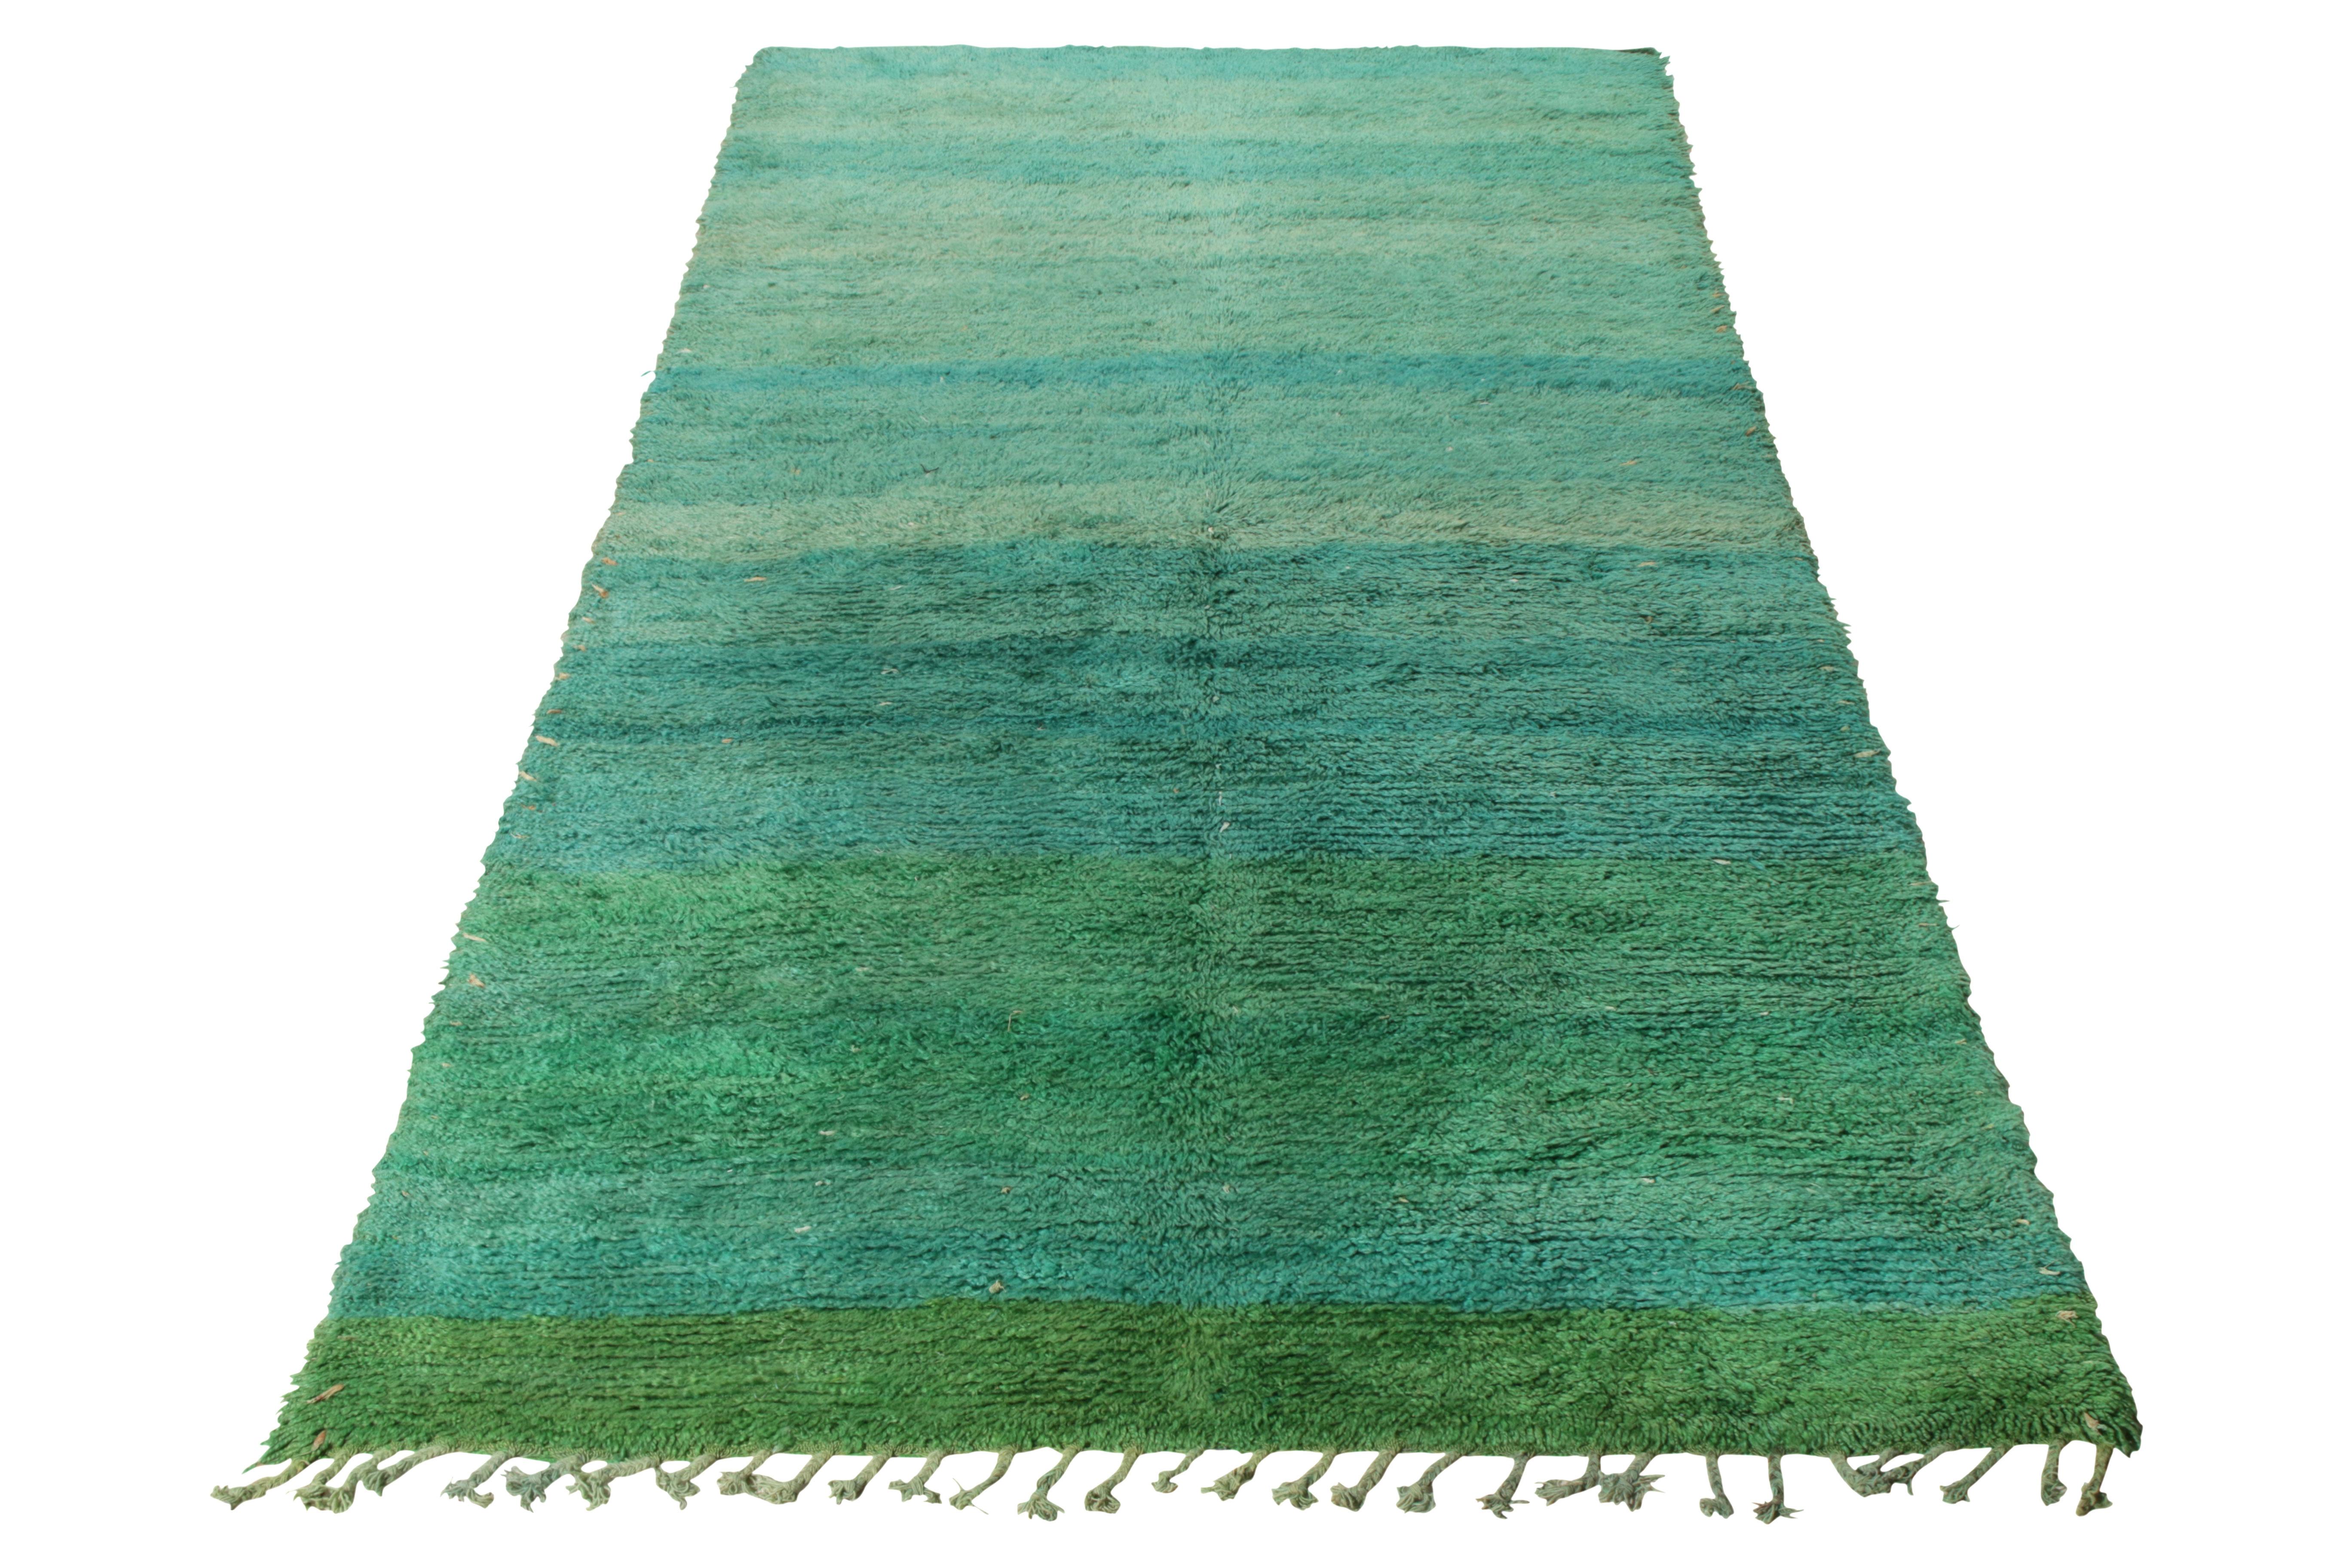 Noué à la main en laine, ce tapis marocain vintage datant des années 1950-1960 fait partie de la collection de Rug & Kilim. 

Tapis tribal berbère, ce tapis présente des franges unilatérales sur la bordure inférieure et une striation de couleurs